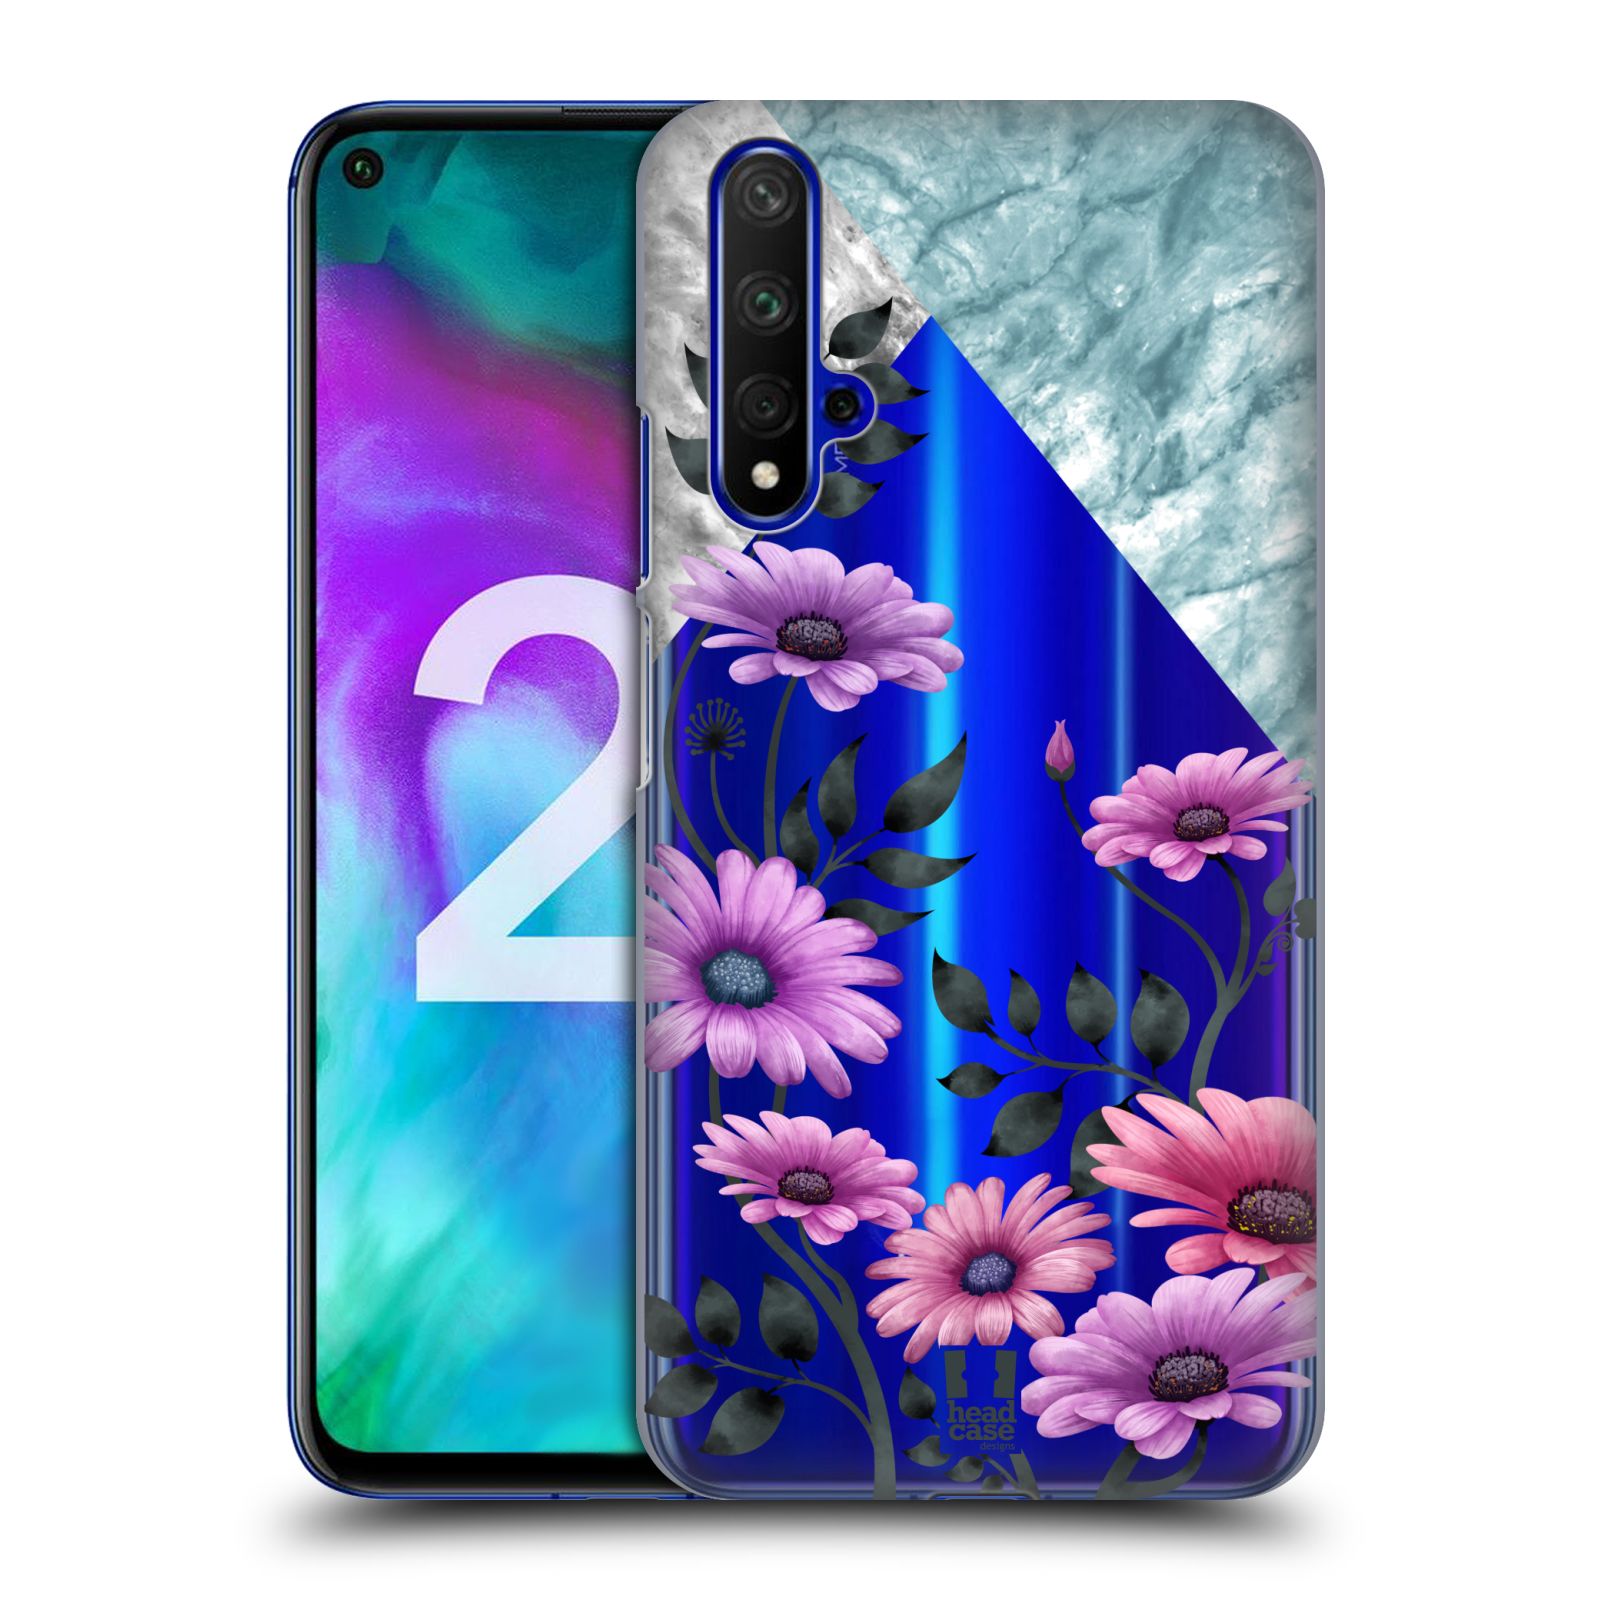 Pouzdro na mobil Honor 20 - HEAD CASE - květiny hvězdnice, Aster fialová a modrá